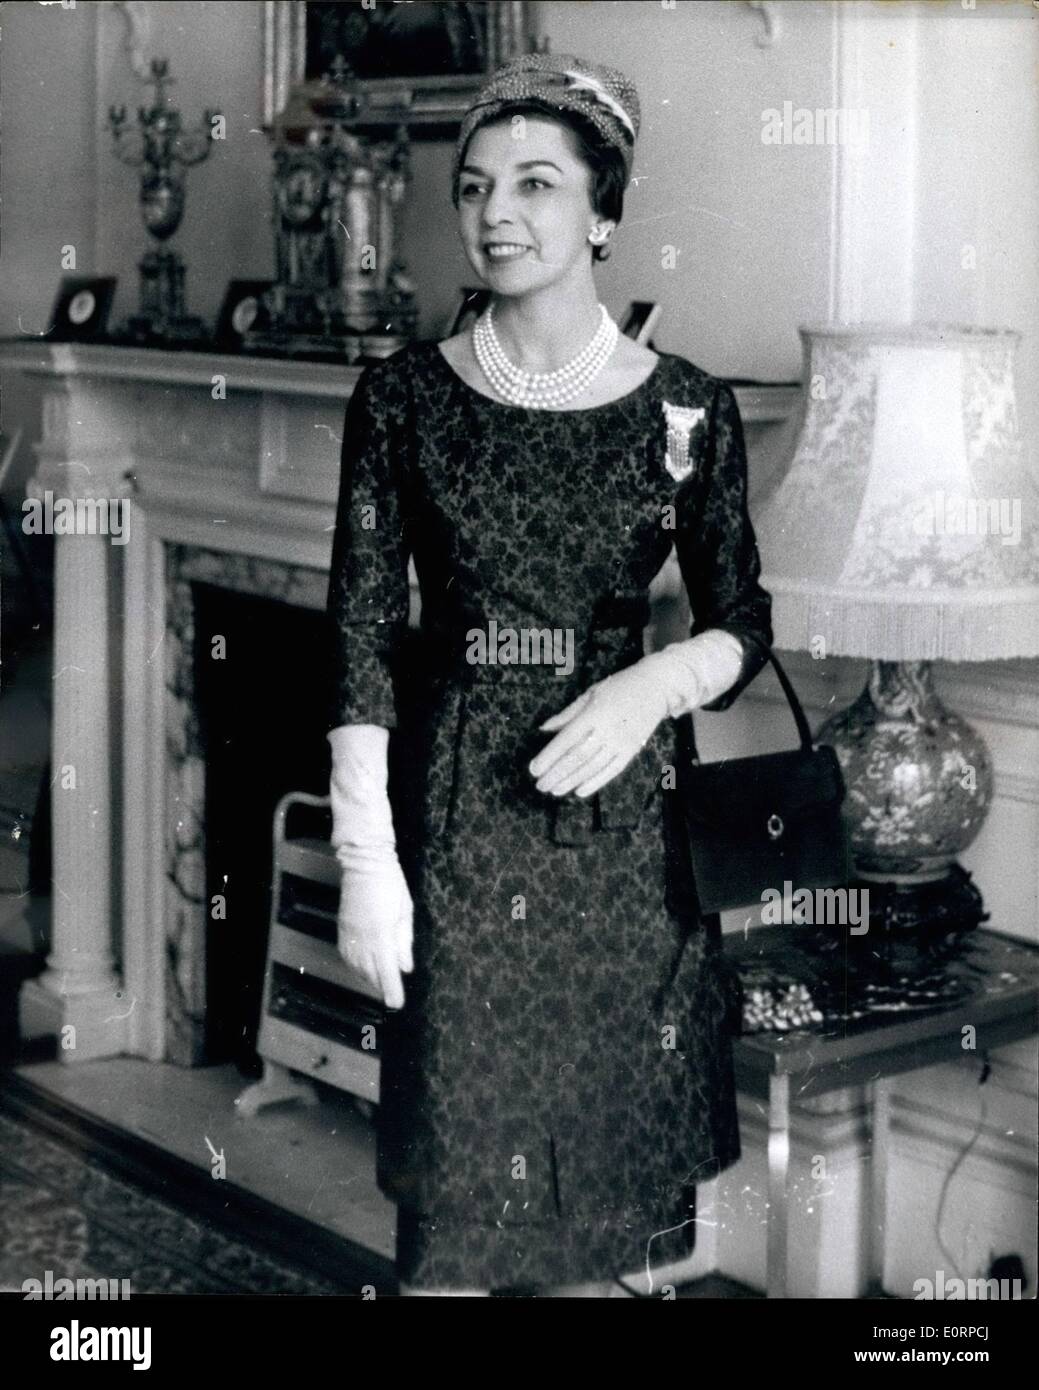 25 février 1960 - 25-2-60 Visite officielle du Président du Pérou. Le Dr D. Manuel Prado, le président du Pérou, et son épouse, Madame Clorinde Prado, arrivé à Londres hier pour une visite officielle de quatre jours. Photo montre : Señora Clorinde Prado, épouse du Président, vu avant son départ pour le déjeuner avec la duchesse de Kent, à Kensington Palace. Senora Prado porte une robe par Lanvin de Paris, un trimeed en plumes de faisan hat, une parure de diamants et d'or avec collier de perles. Elle est parmi les meilleures du monde habillé femme. Banque D'Images